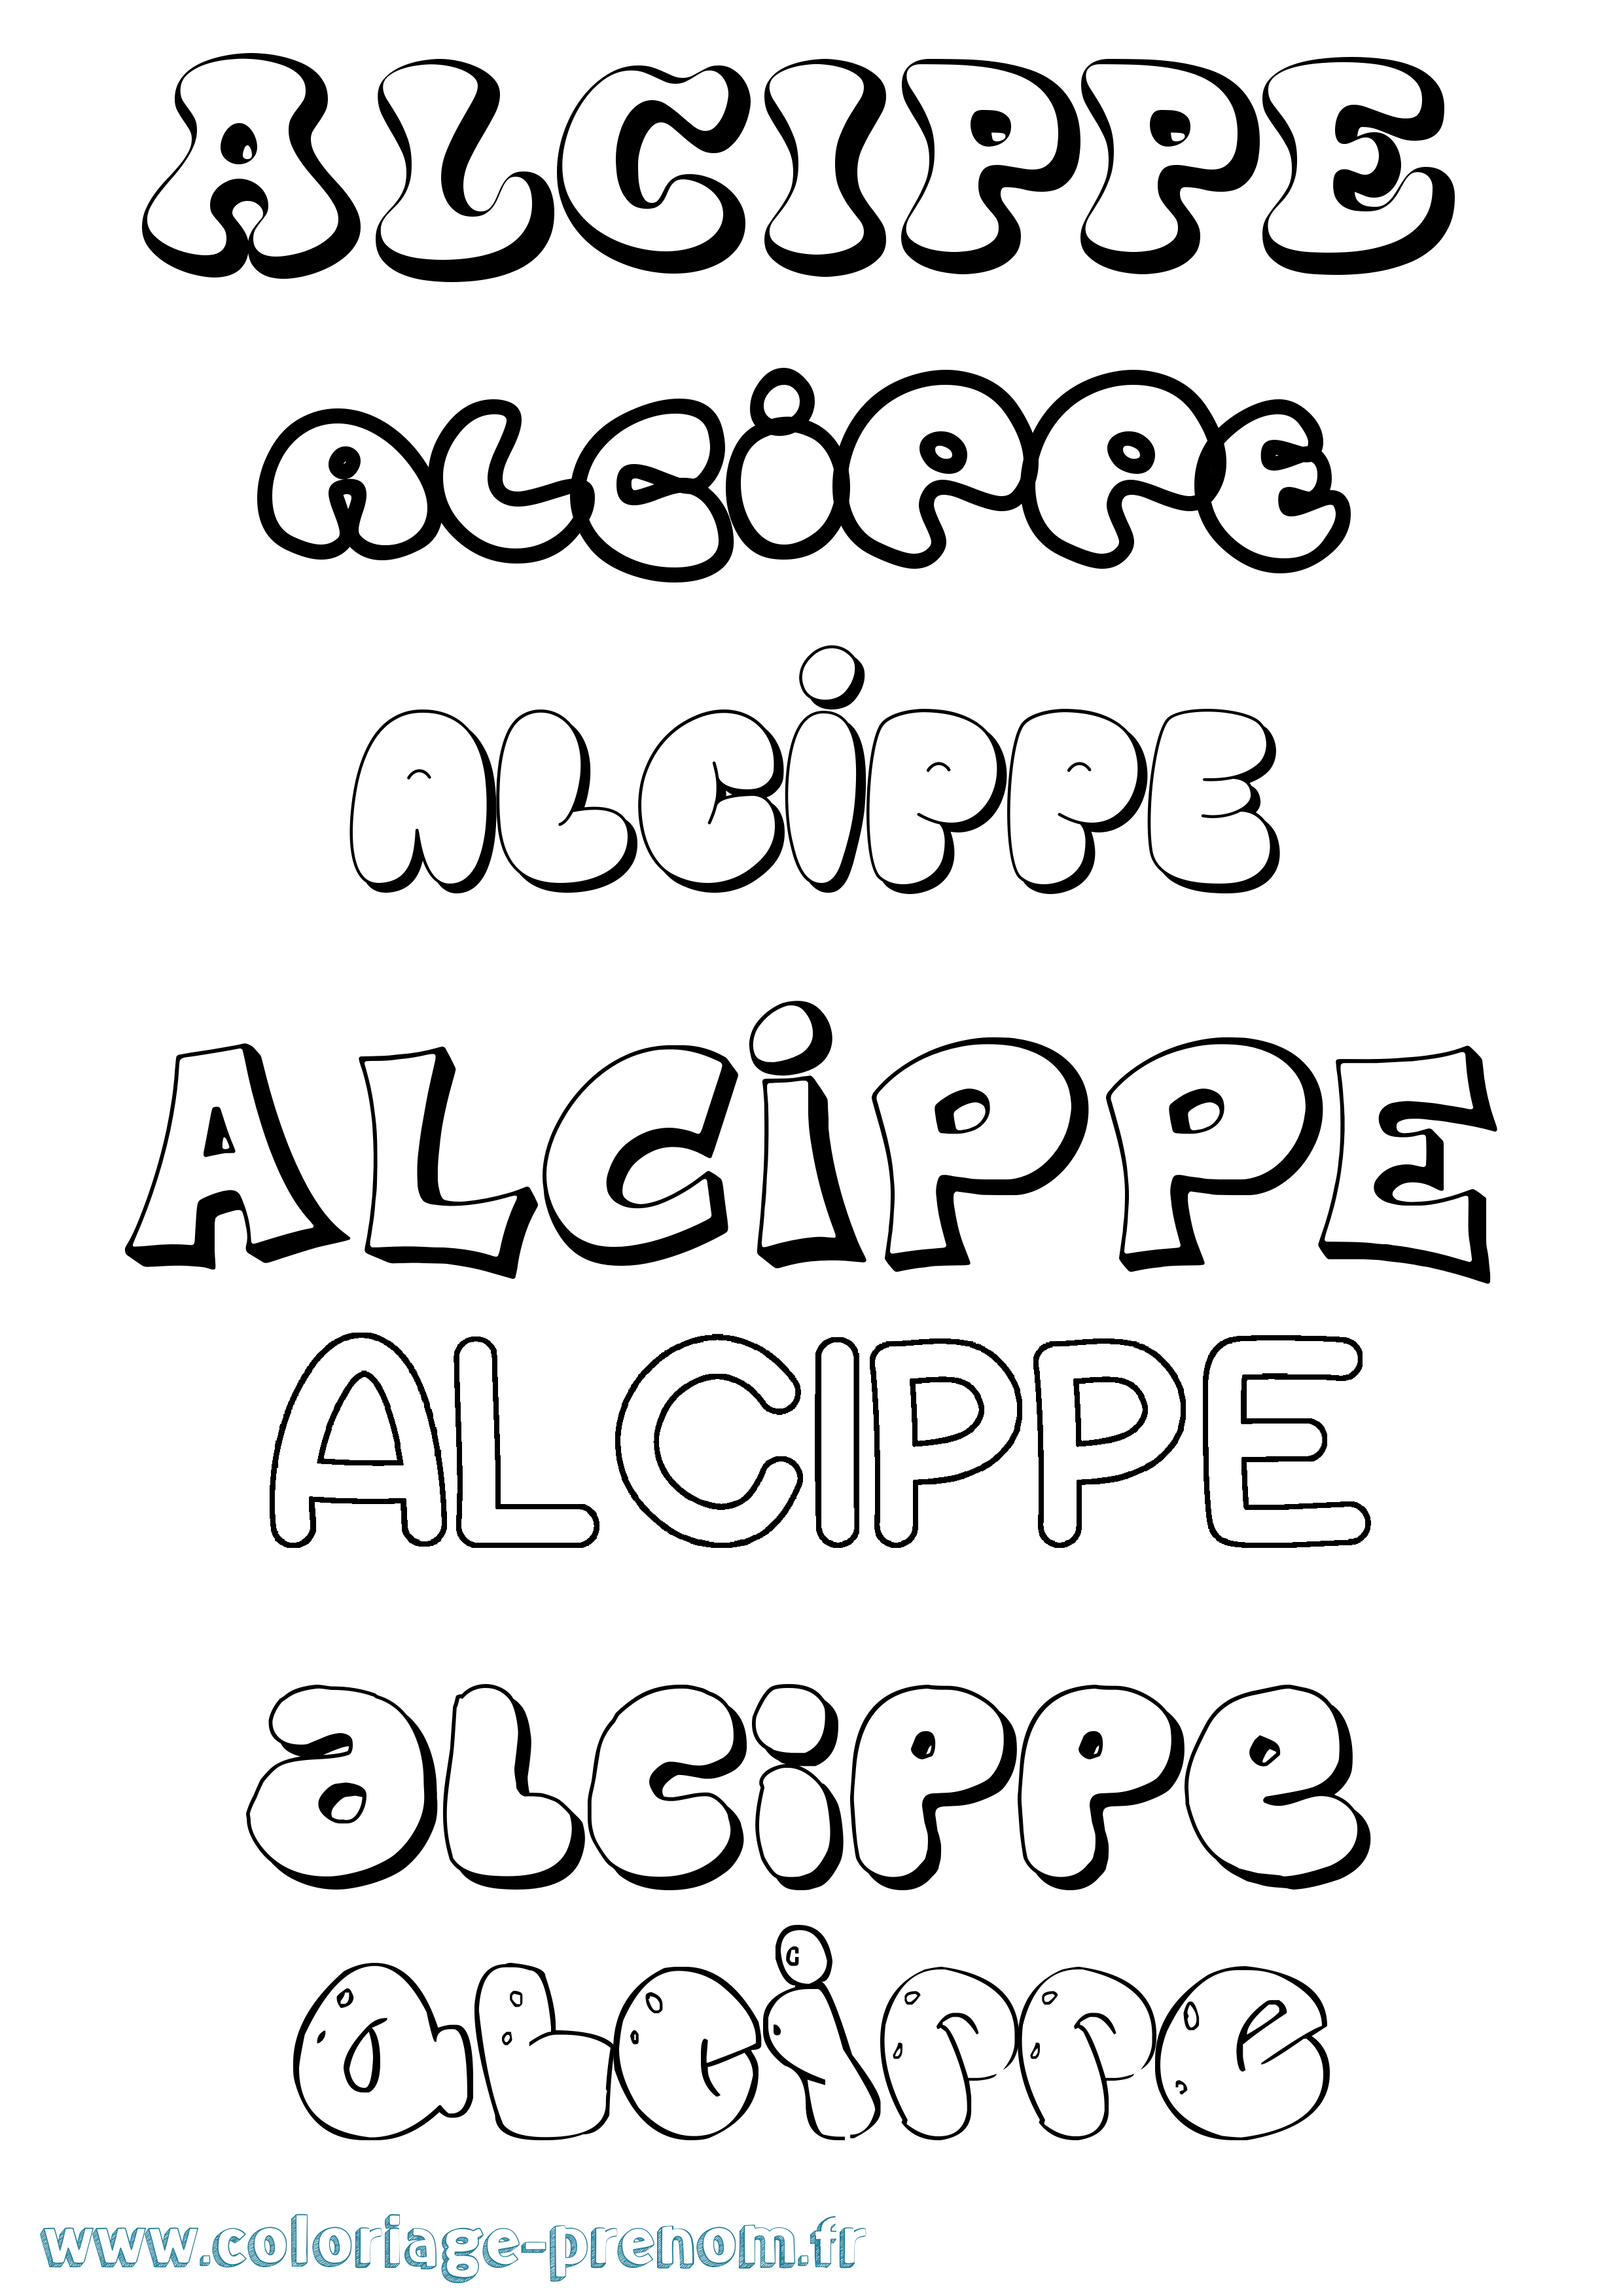 Coloriage prénom Alcippe Bubble